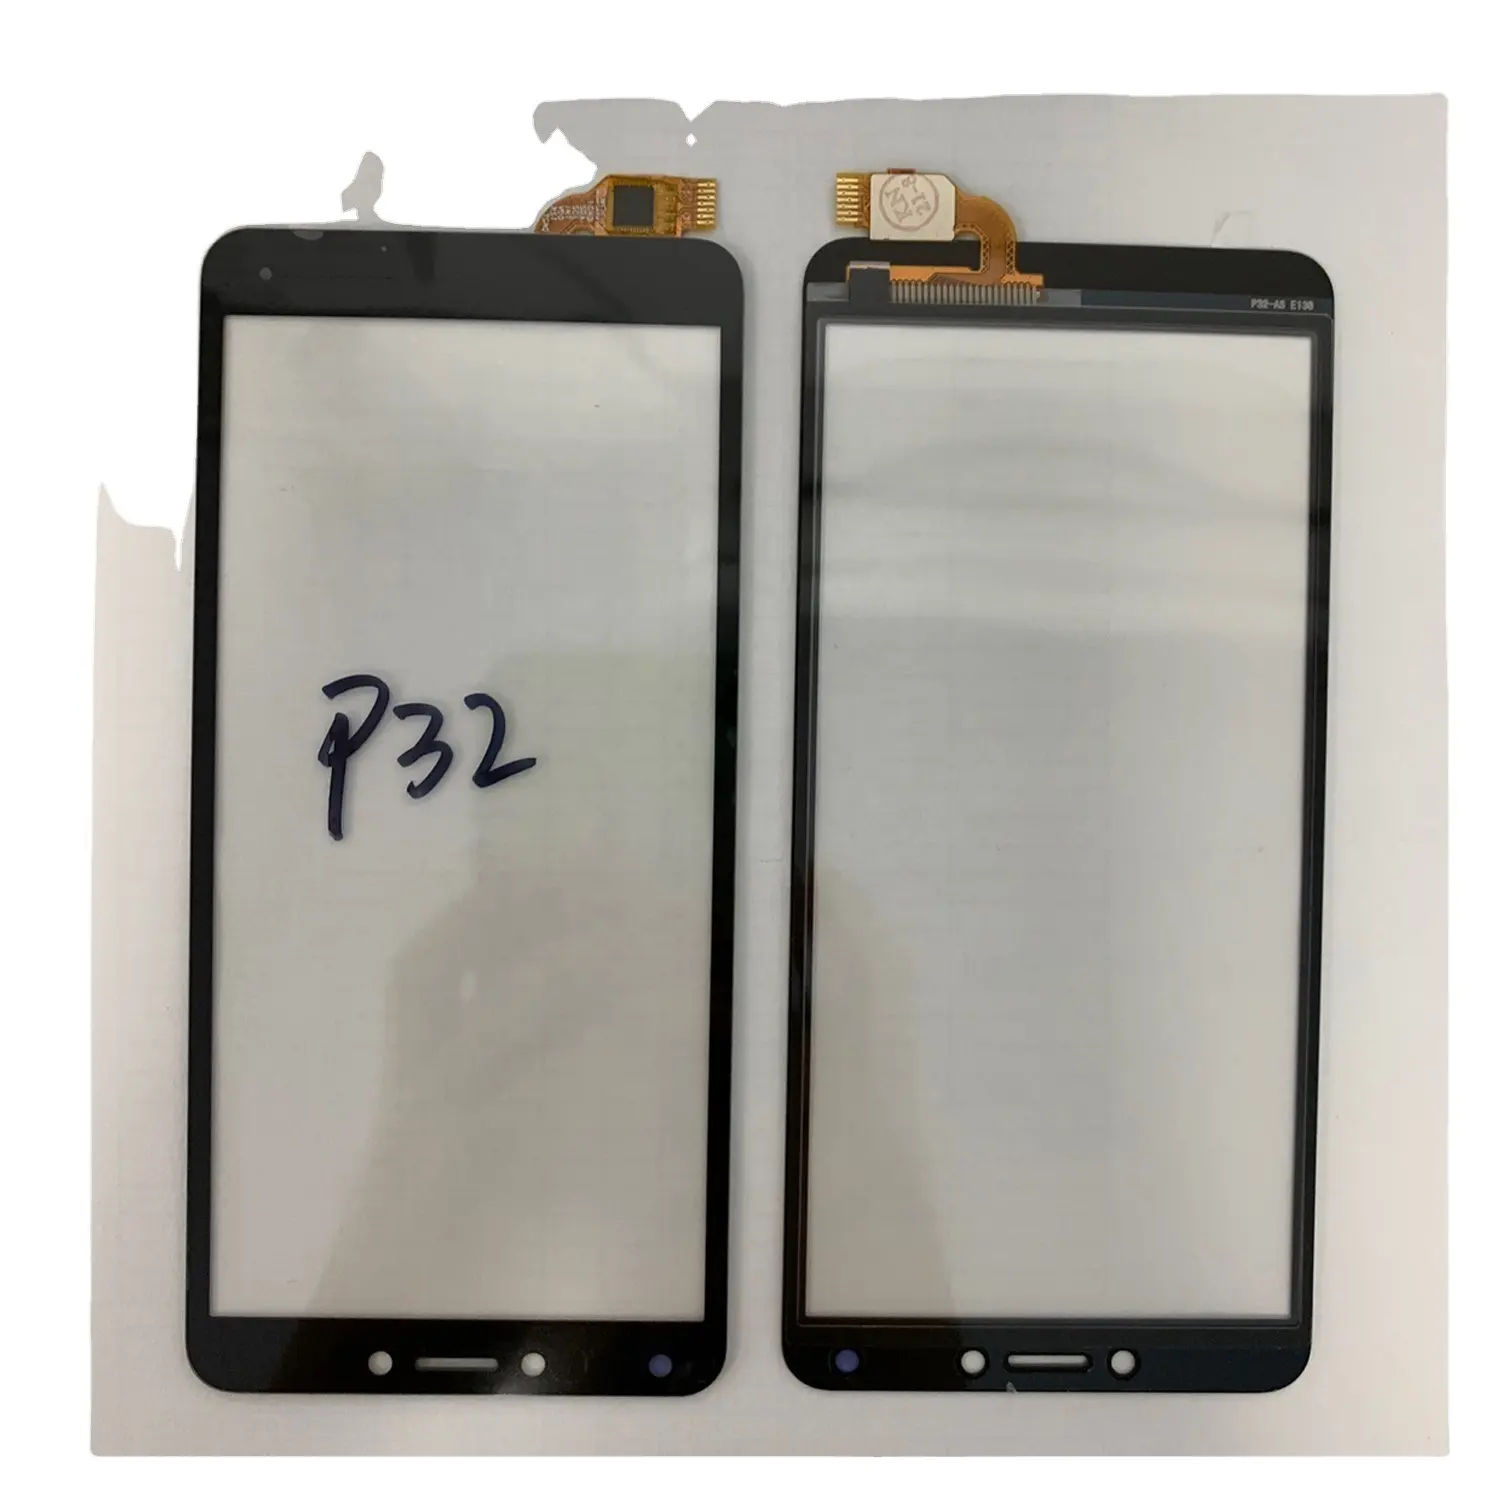 Fabriek Prijs Scherm Touch Voor Itel P32 Touchscreen Lcd Reparatie Onderdeel Wholesale Prijs Mobiele Telefoon Accessoires Snelle Verzending